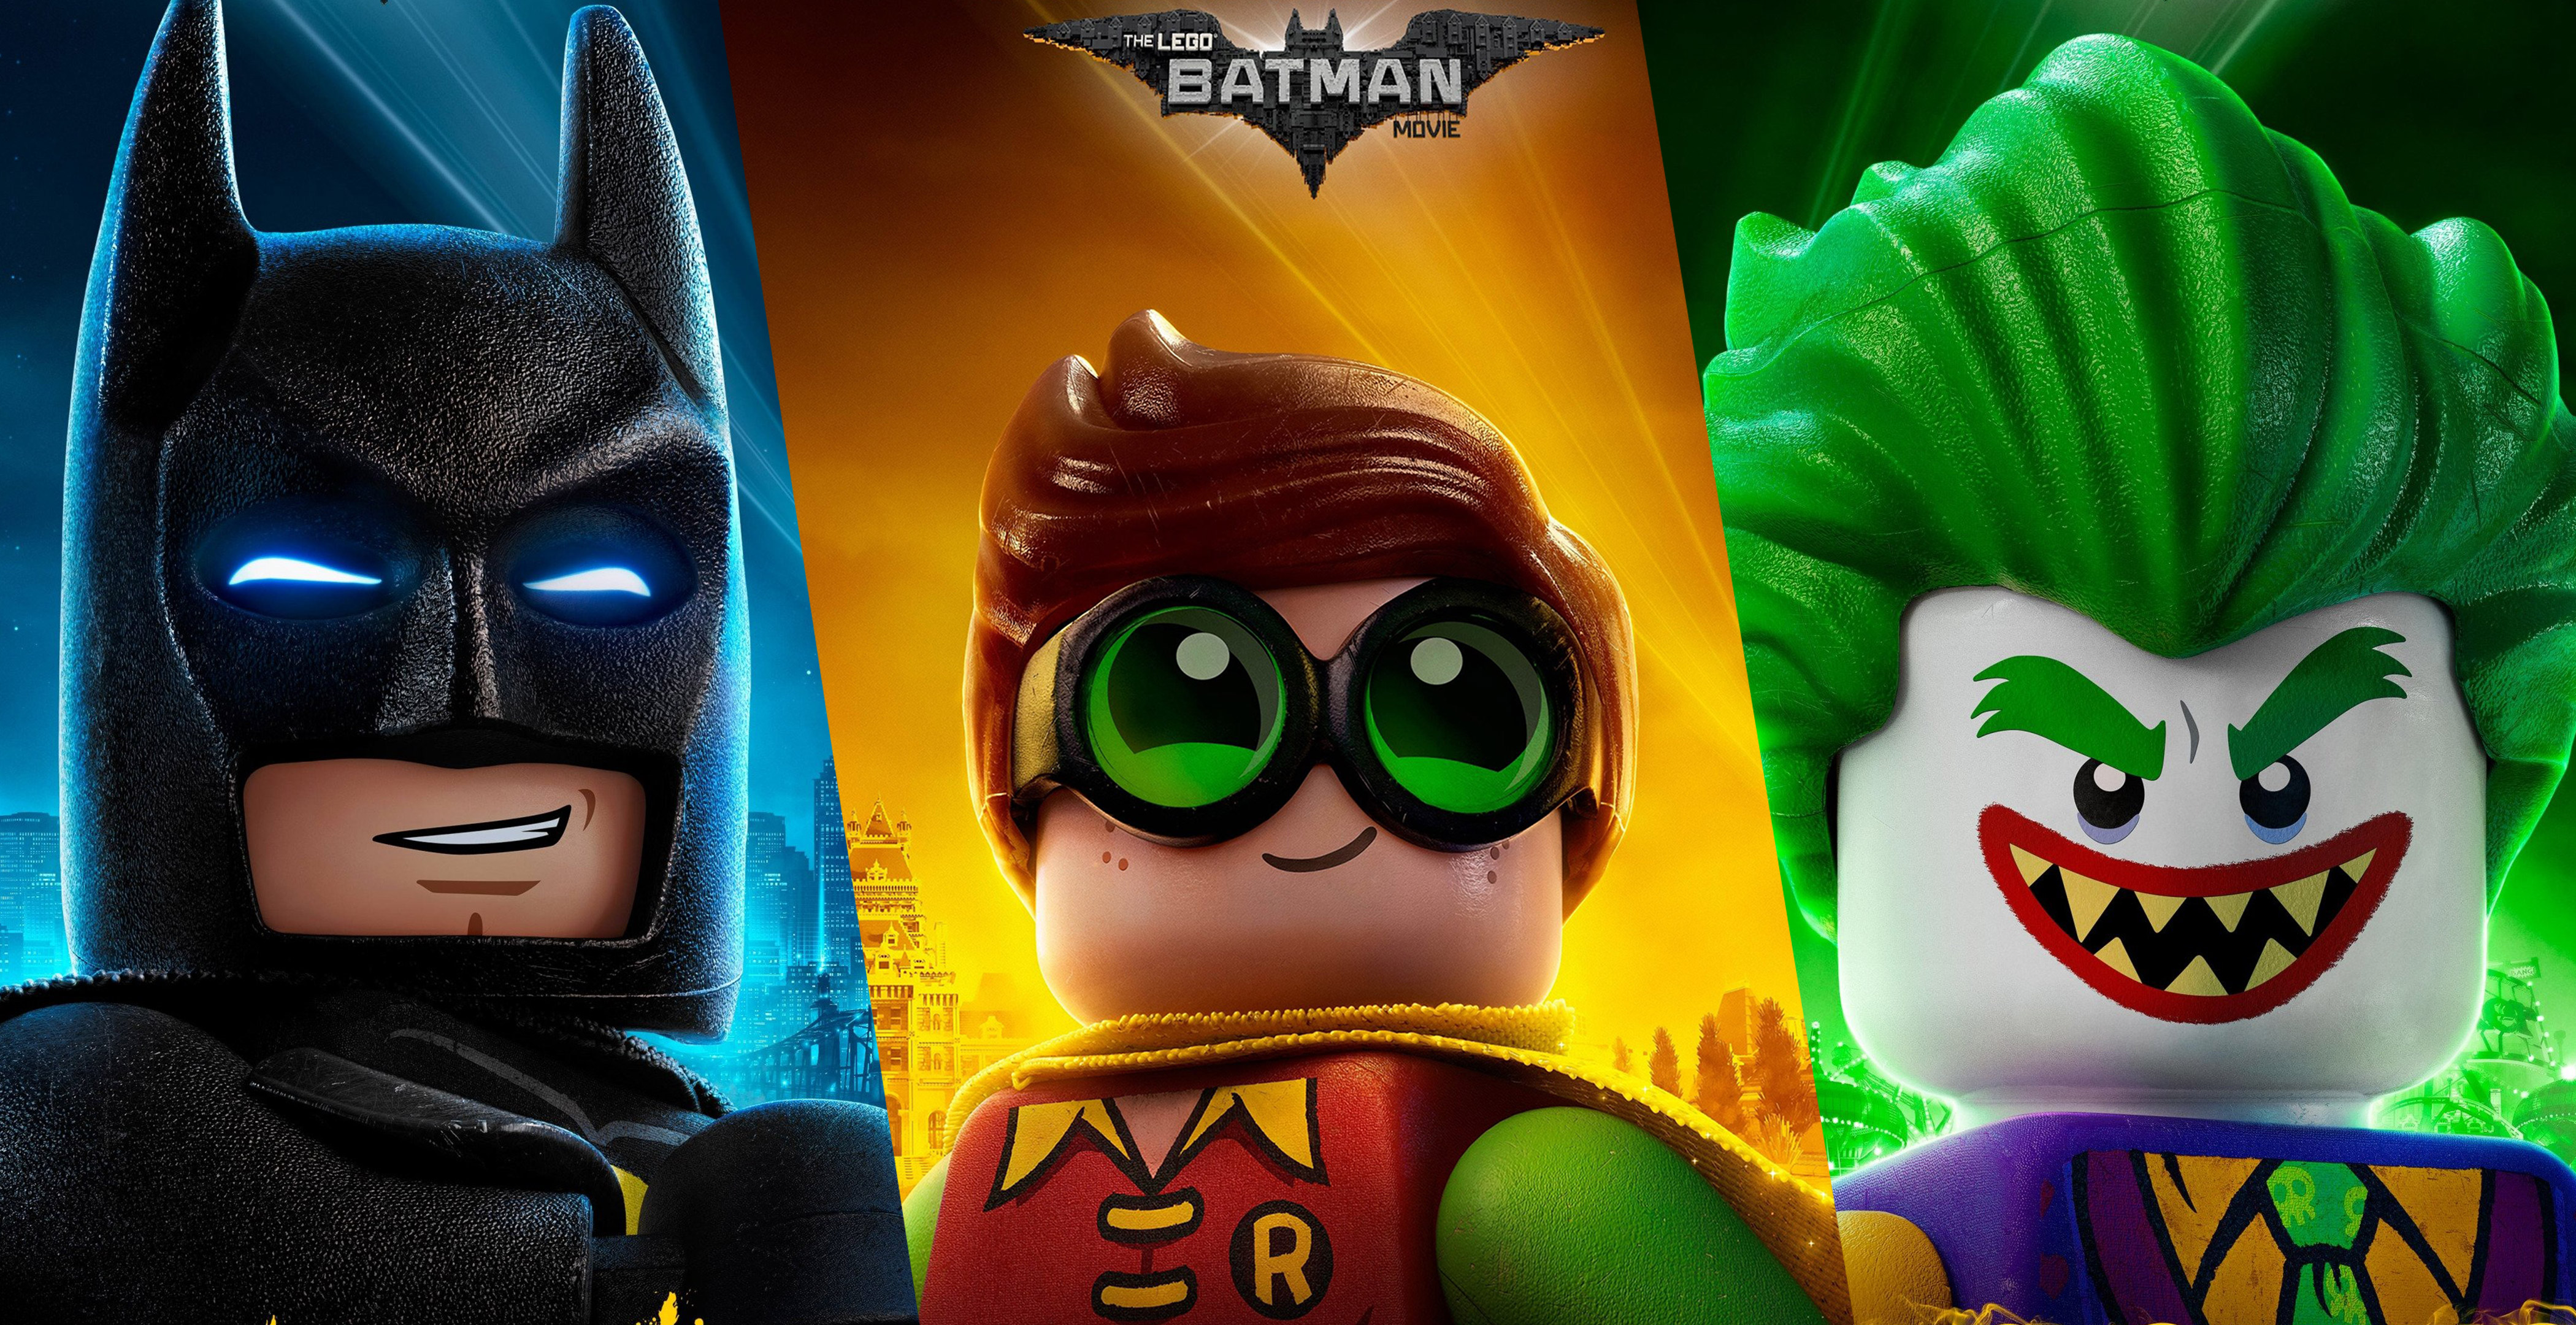 Скачать обои Лего Фильм: Бэтмен на телефон бесплатно